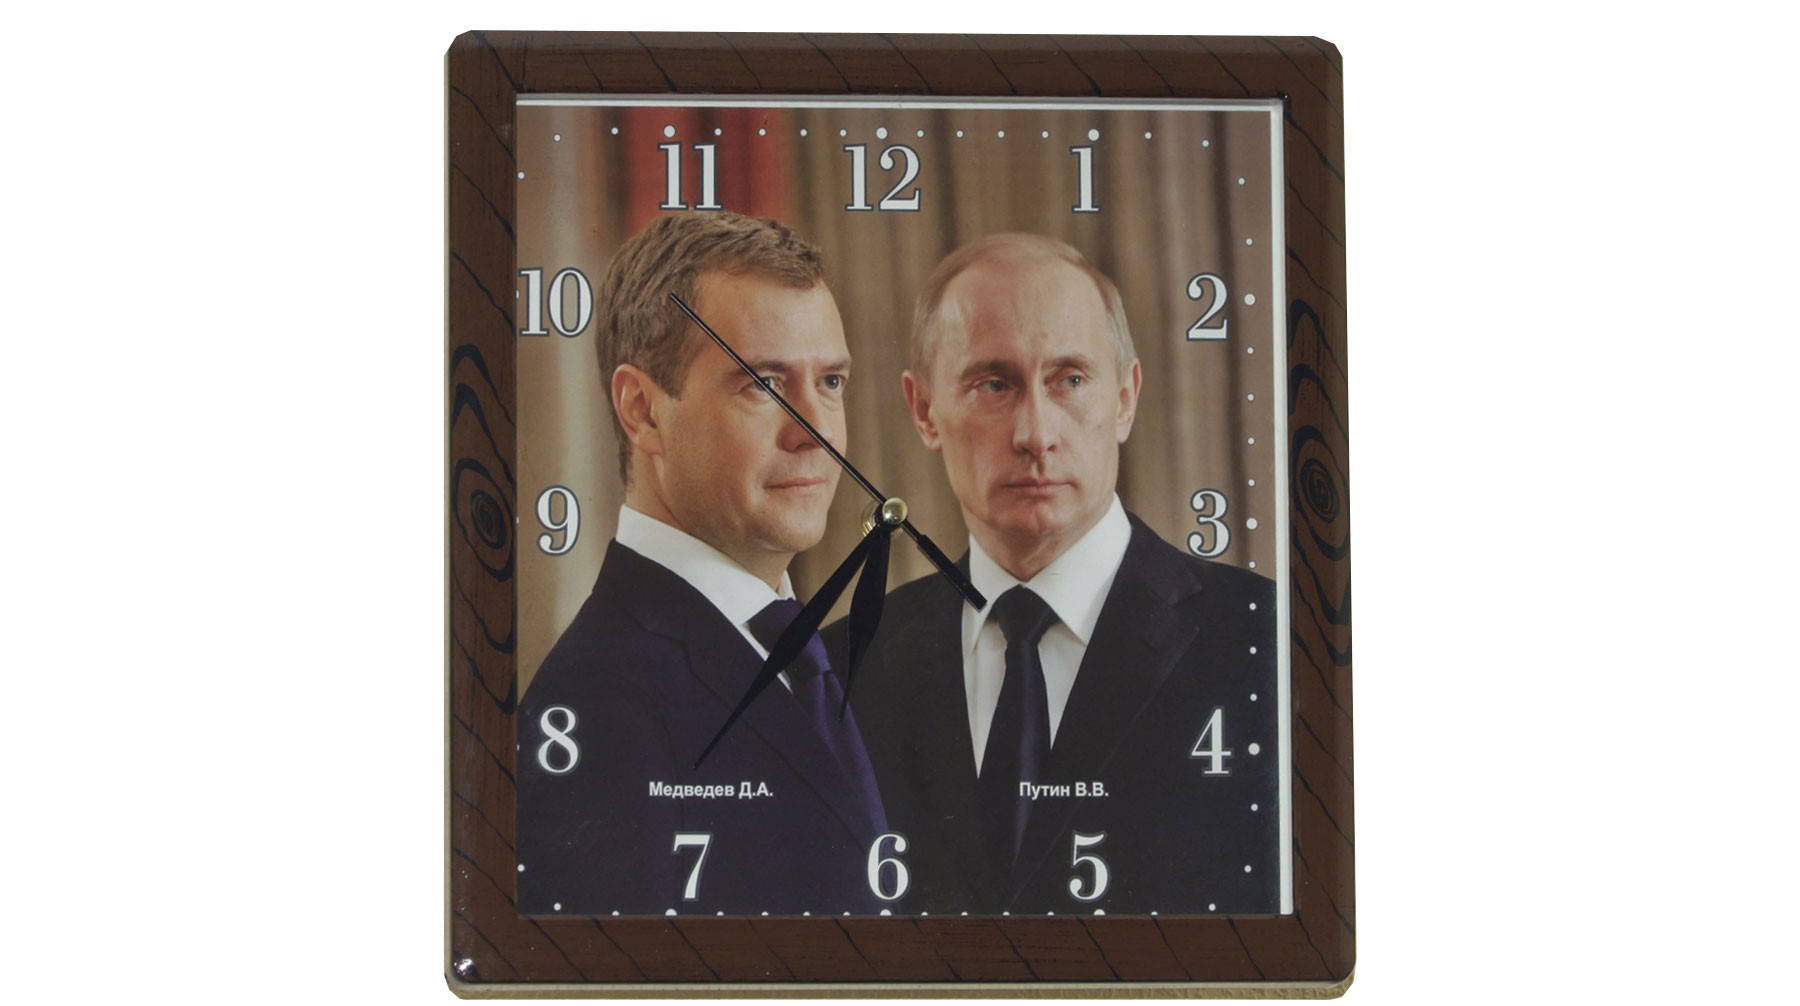 Dailystorm - Медведеву в Перми показали «умные часы» российского производства